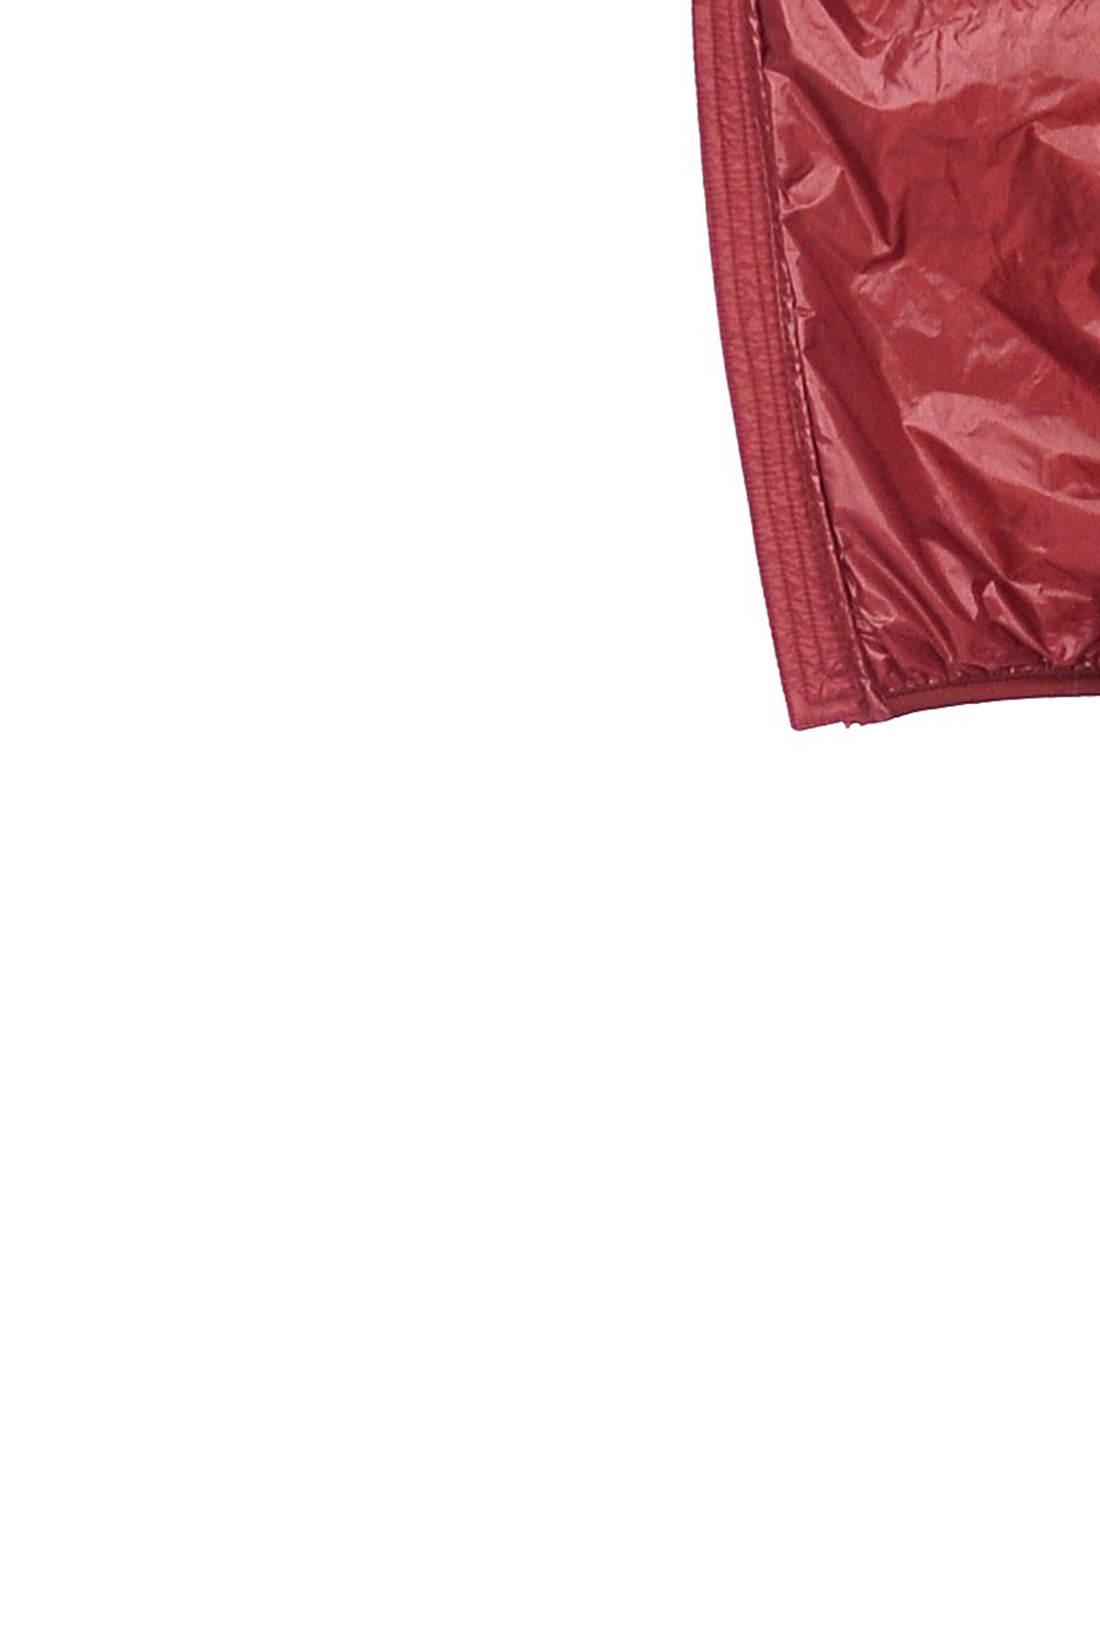 Лёгкий пуховик с капюшоном (арт. baon B519706), размер XL, цвет красный Лёгкий пуховик с капюшоном (арт. baon B519706) - фото 3